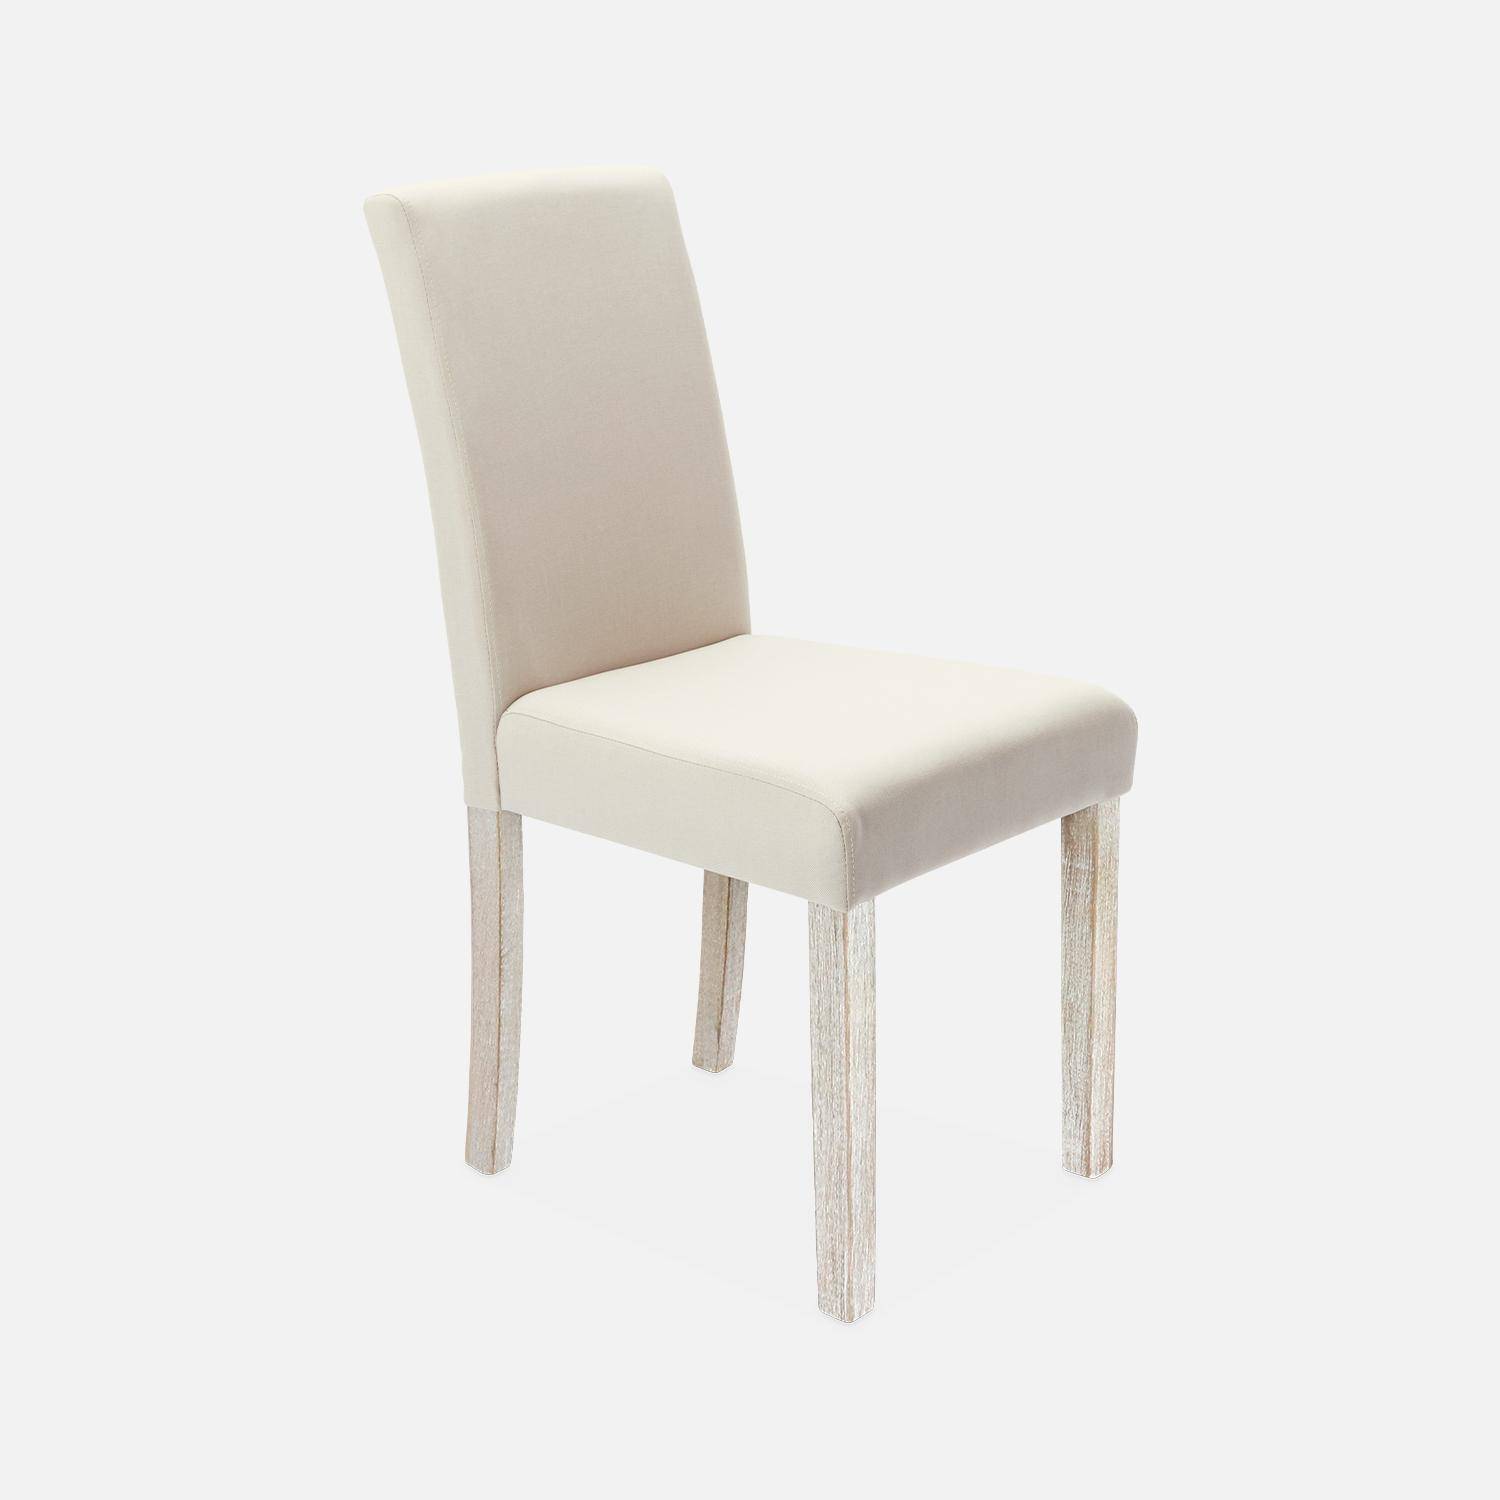 Lot de 4 chaises - Rita - chaises en tissu, pieds en bois cérusé, beige,sweeek,Photo3